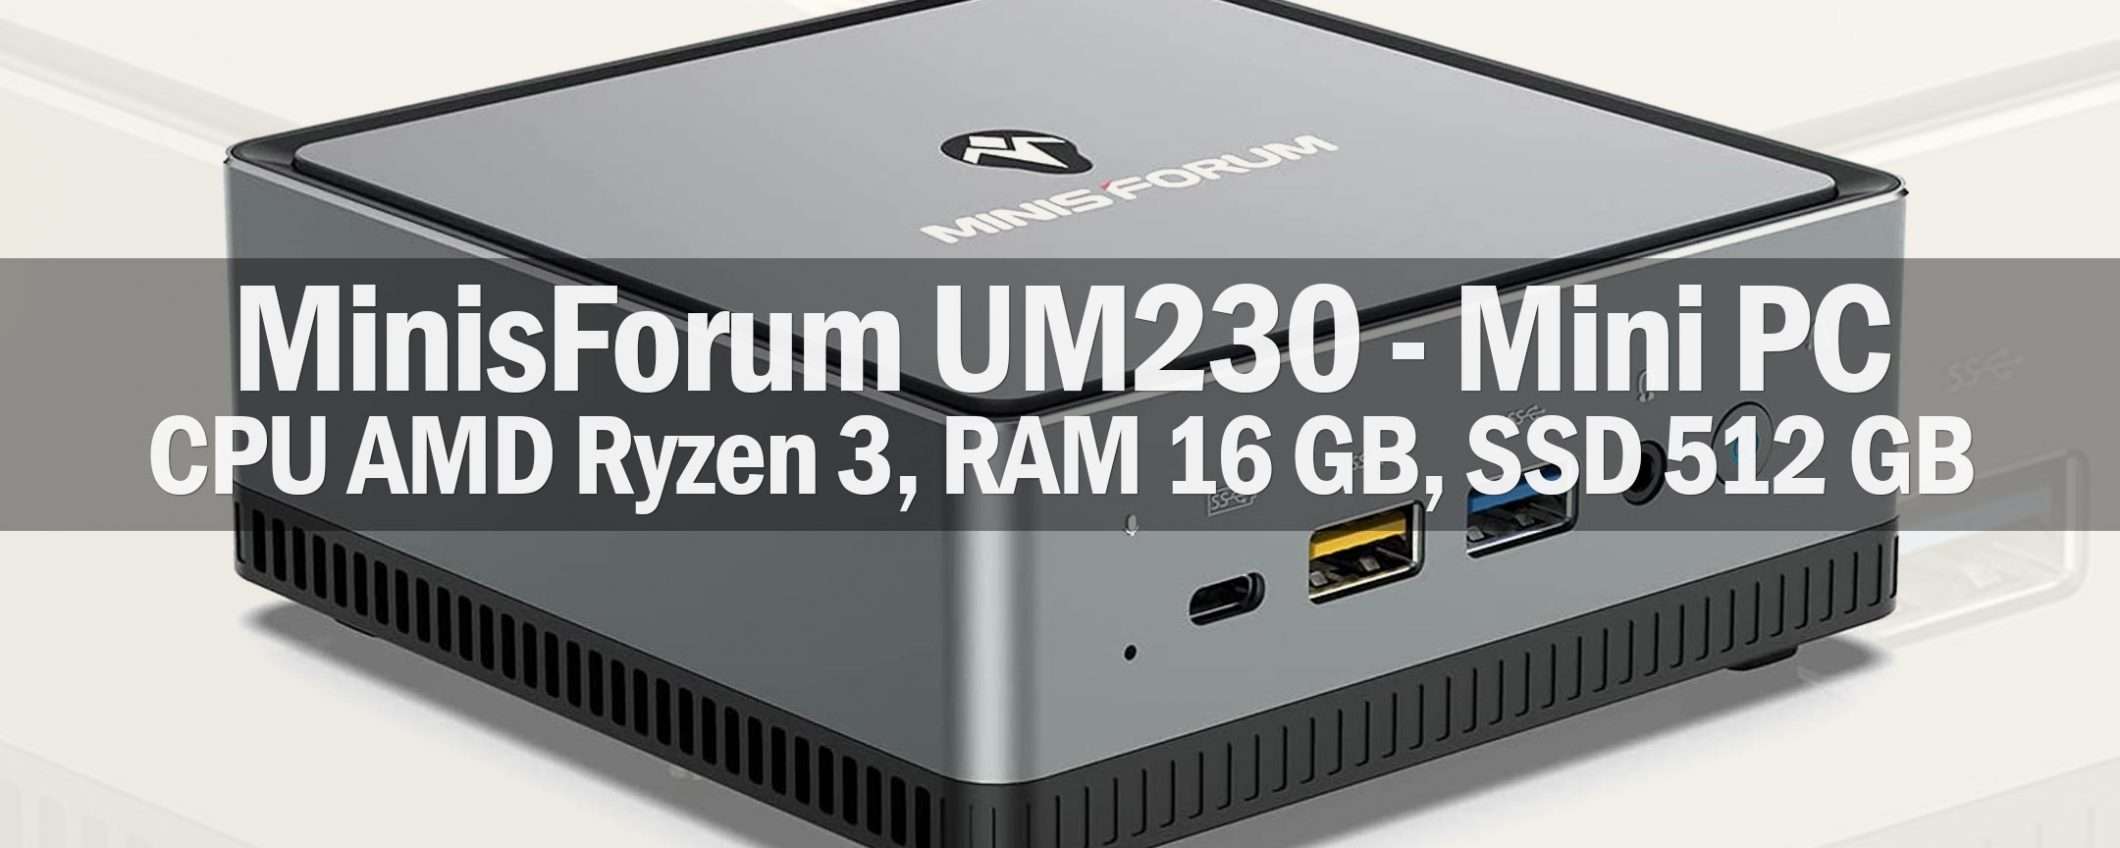 Mini PC con Ryzen 3, 16/512 GB, WiFi 6: CHE SCONTO